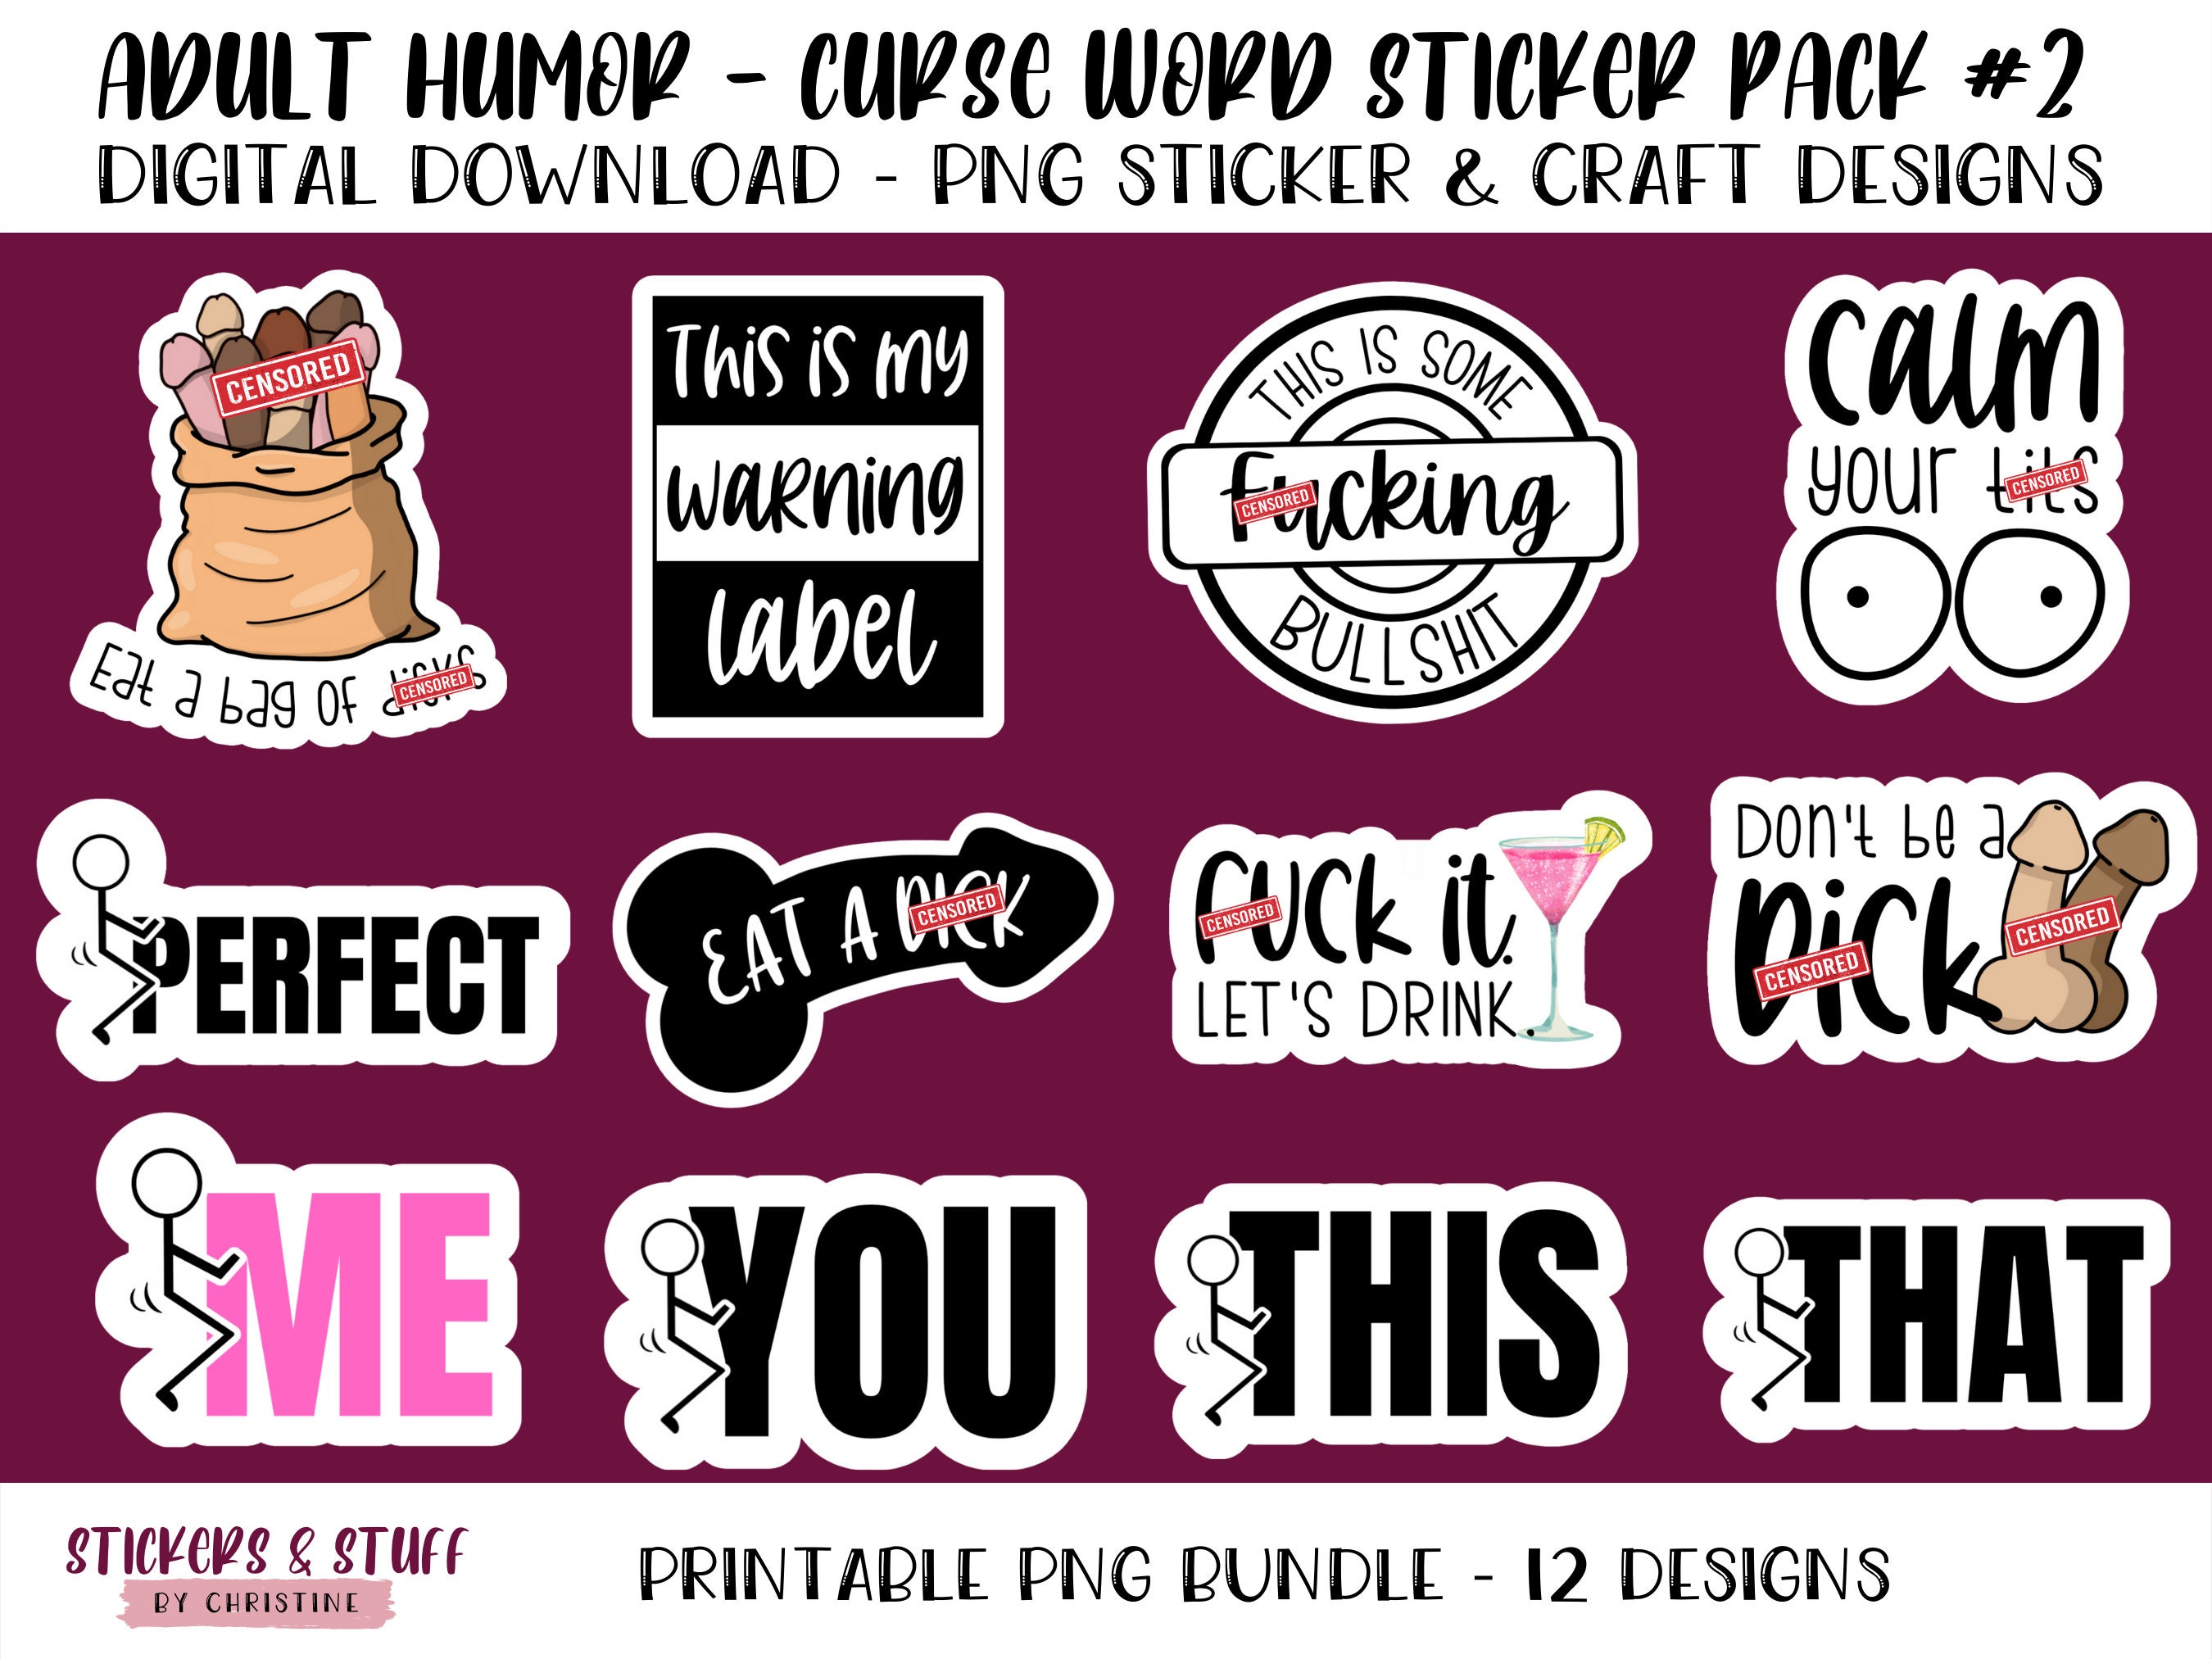 7 Sticker-Ideen  whatsapp lustig, lustig humor, witzige sprüche